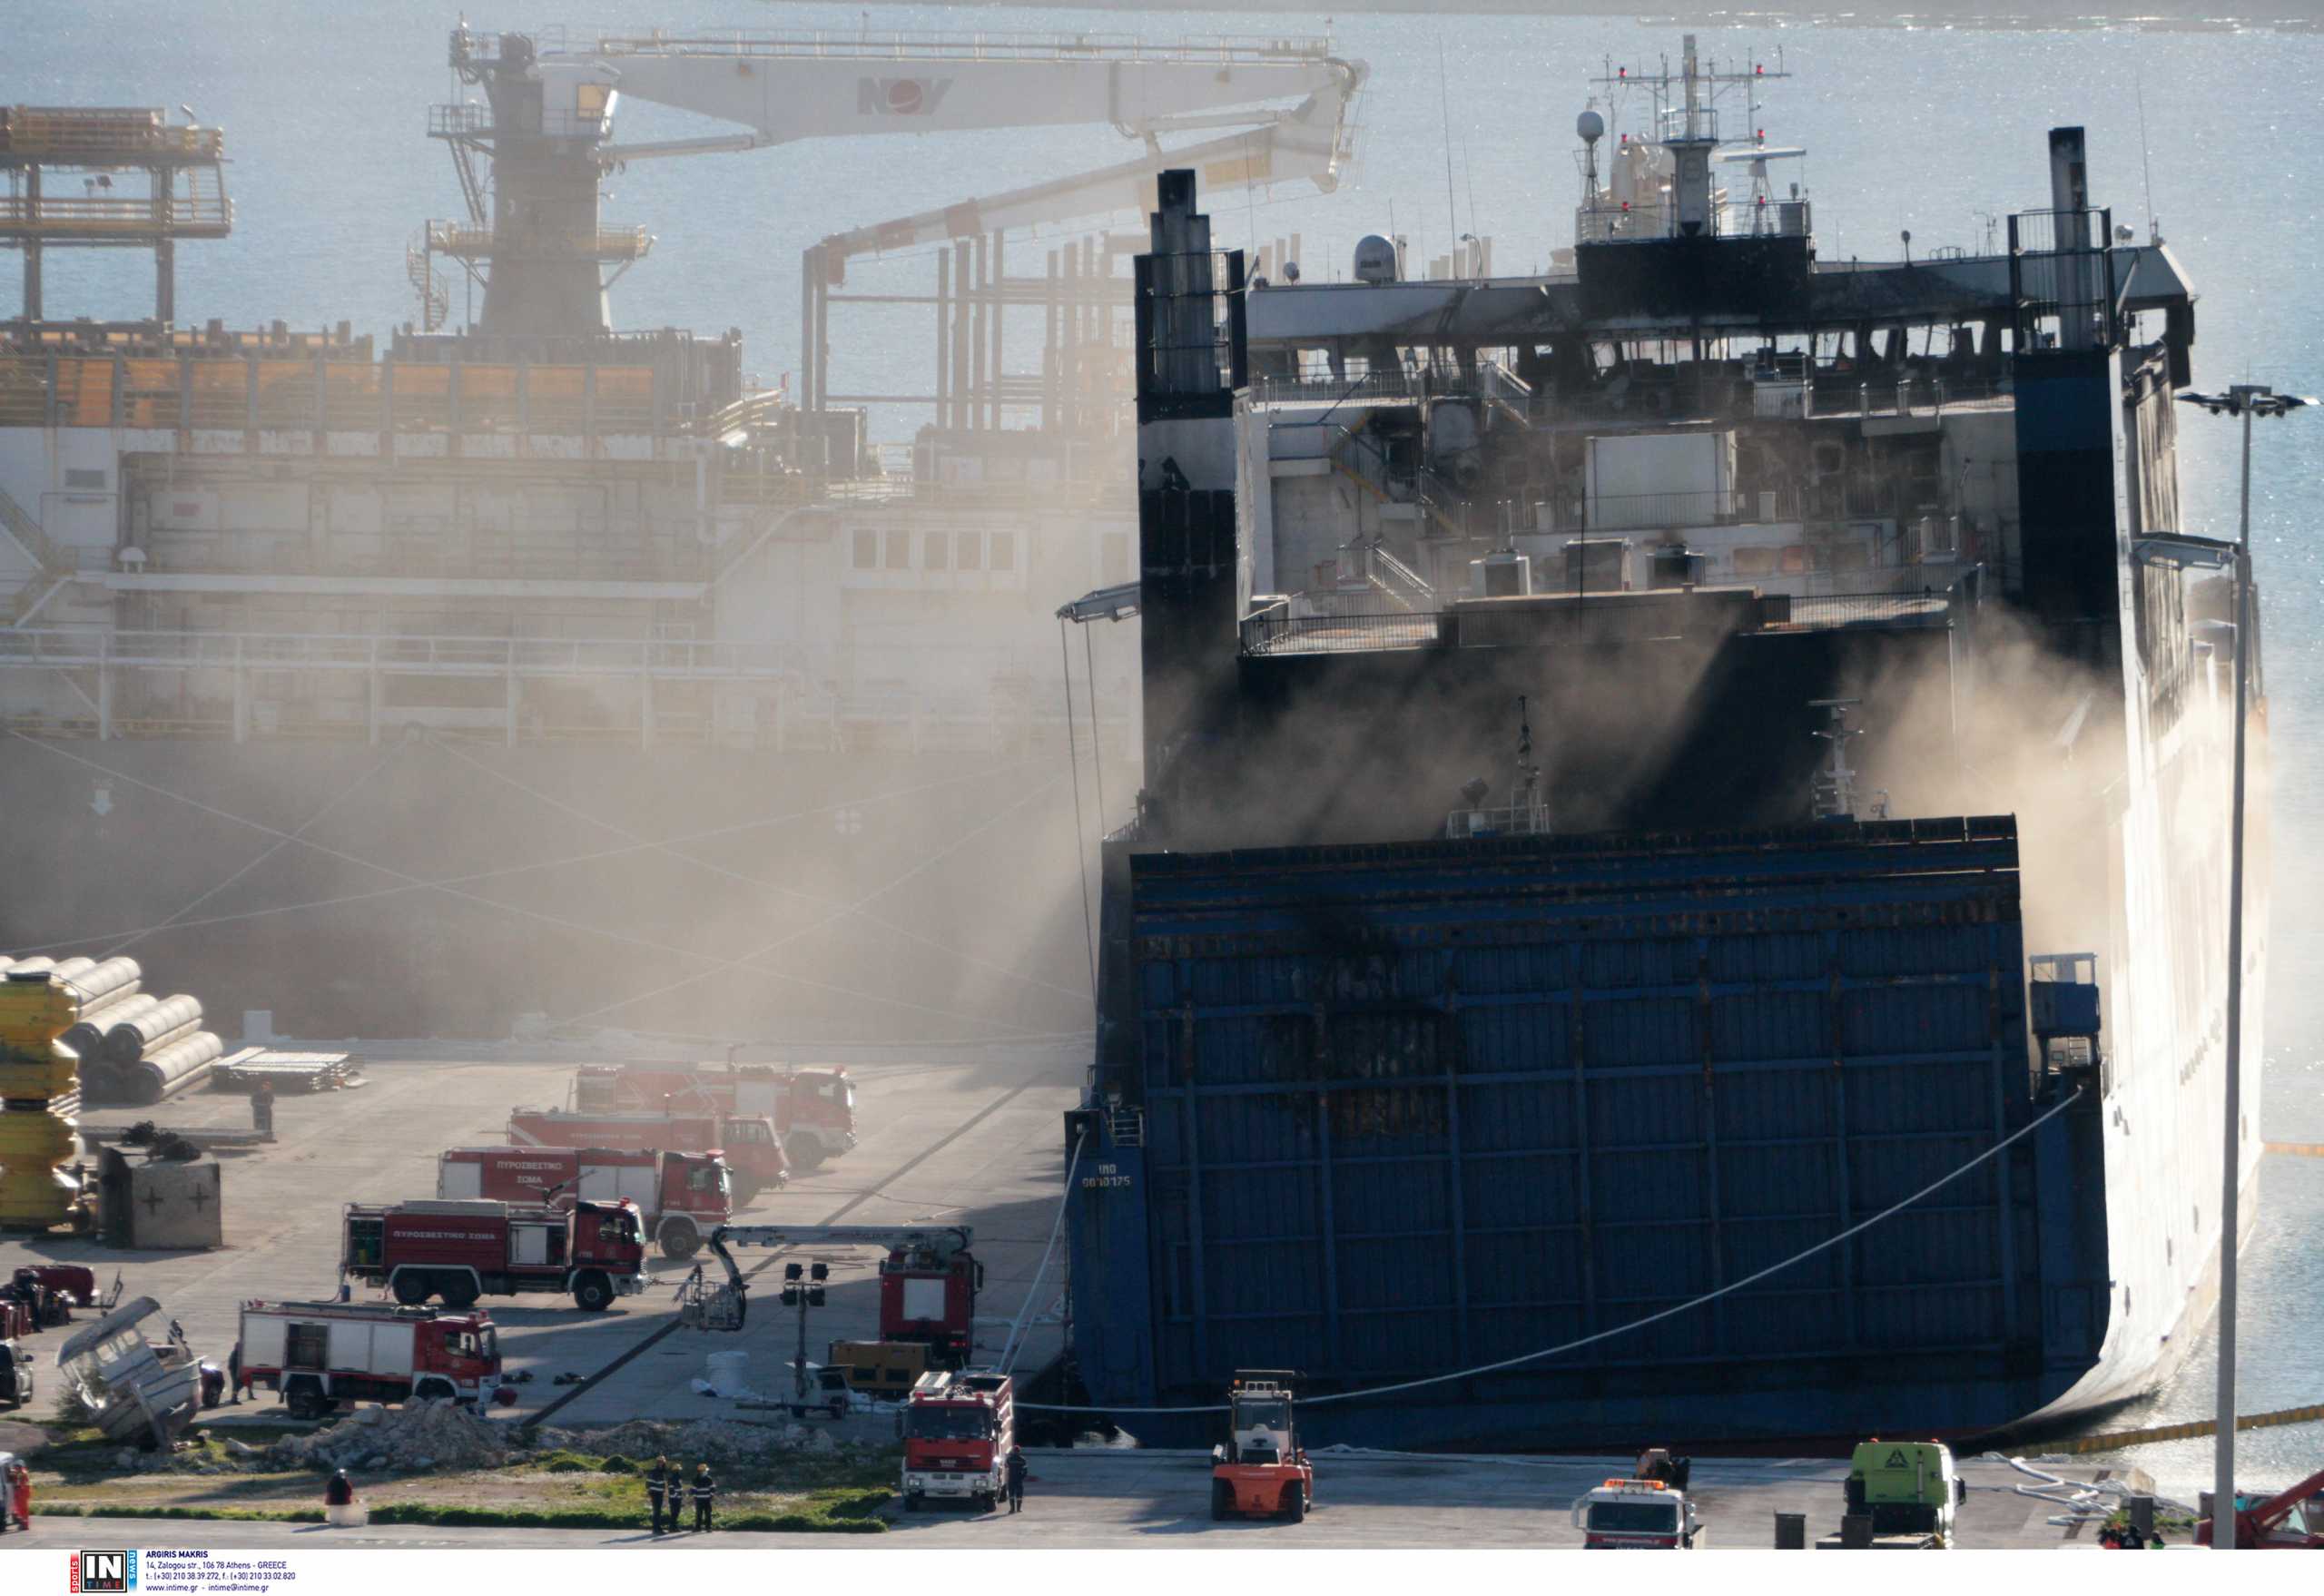 Euroferry Olympia: 5 σοροί δεν έχουν ταυτοποιηθεί 120 μέρες μετά τη ναυτική τραγωδία